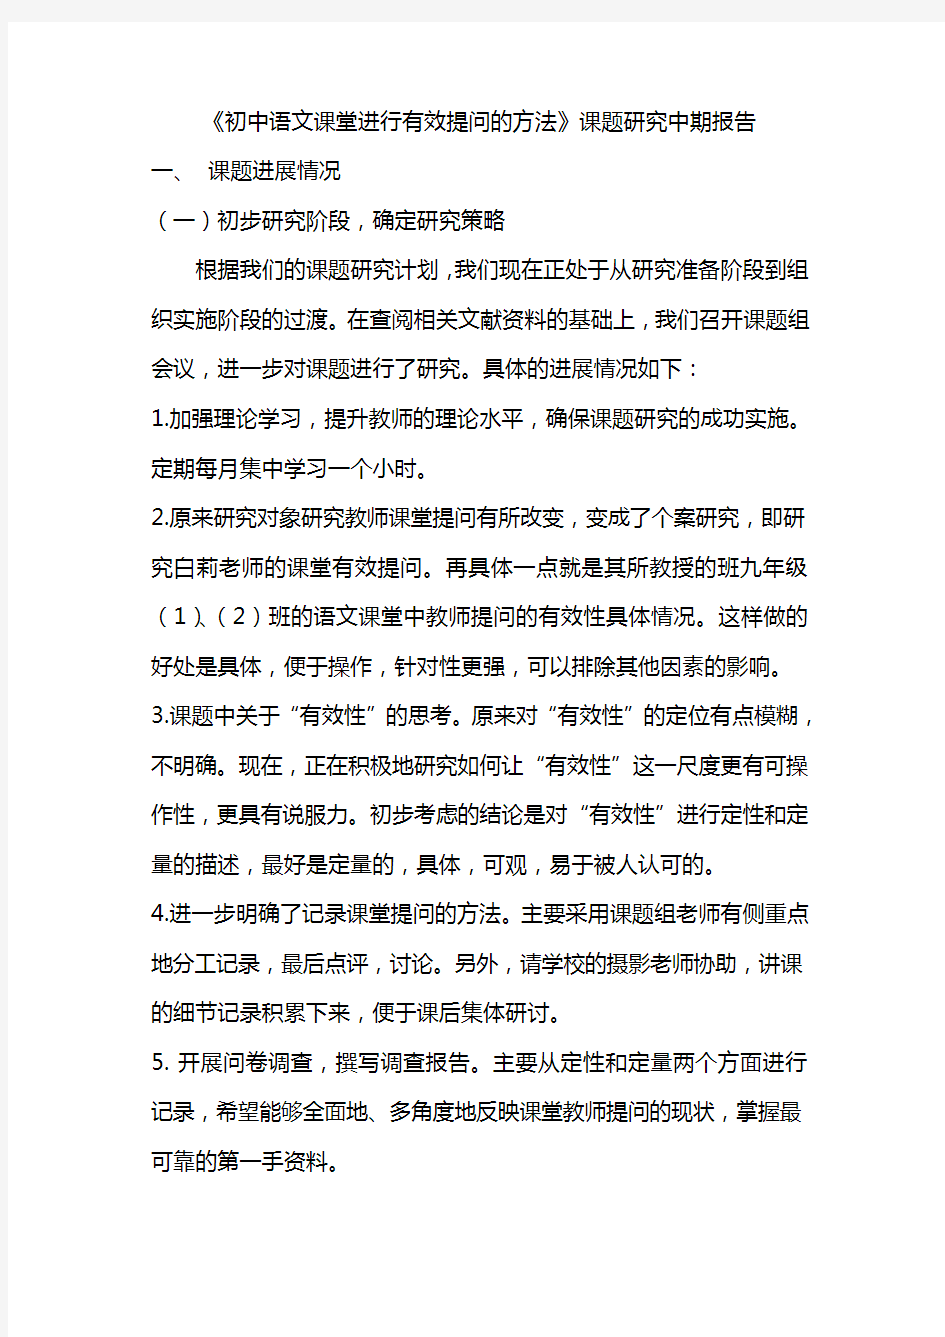 初中语文课堂进行有效提问的方法课题研究中期报告